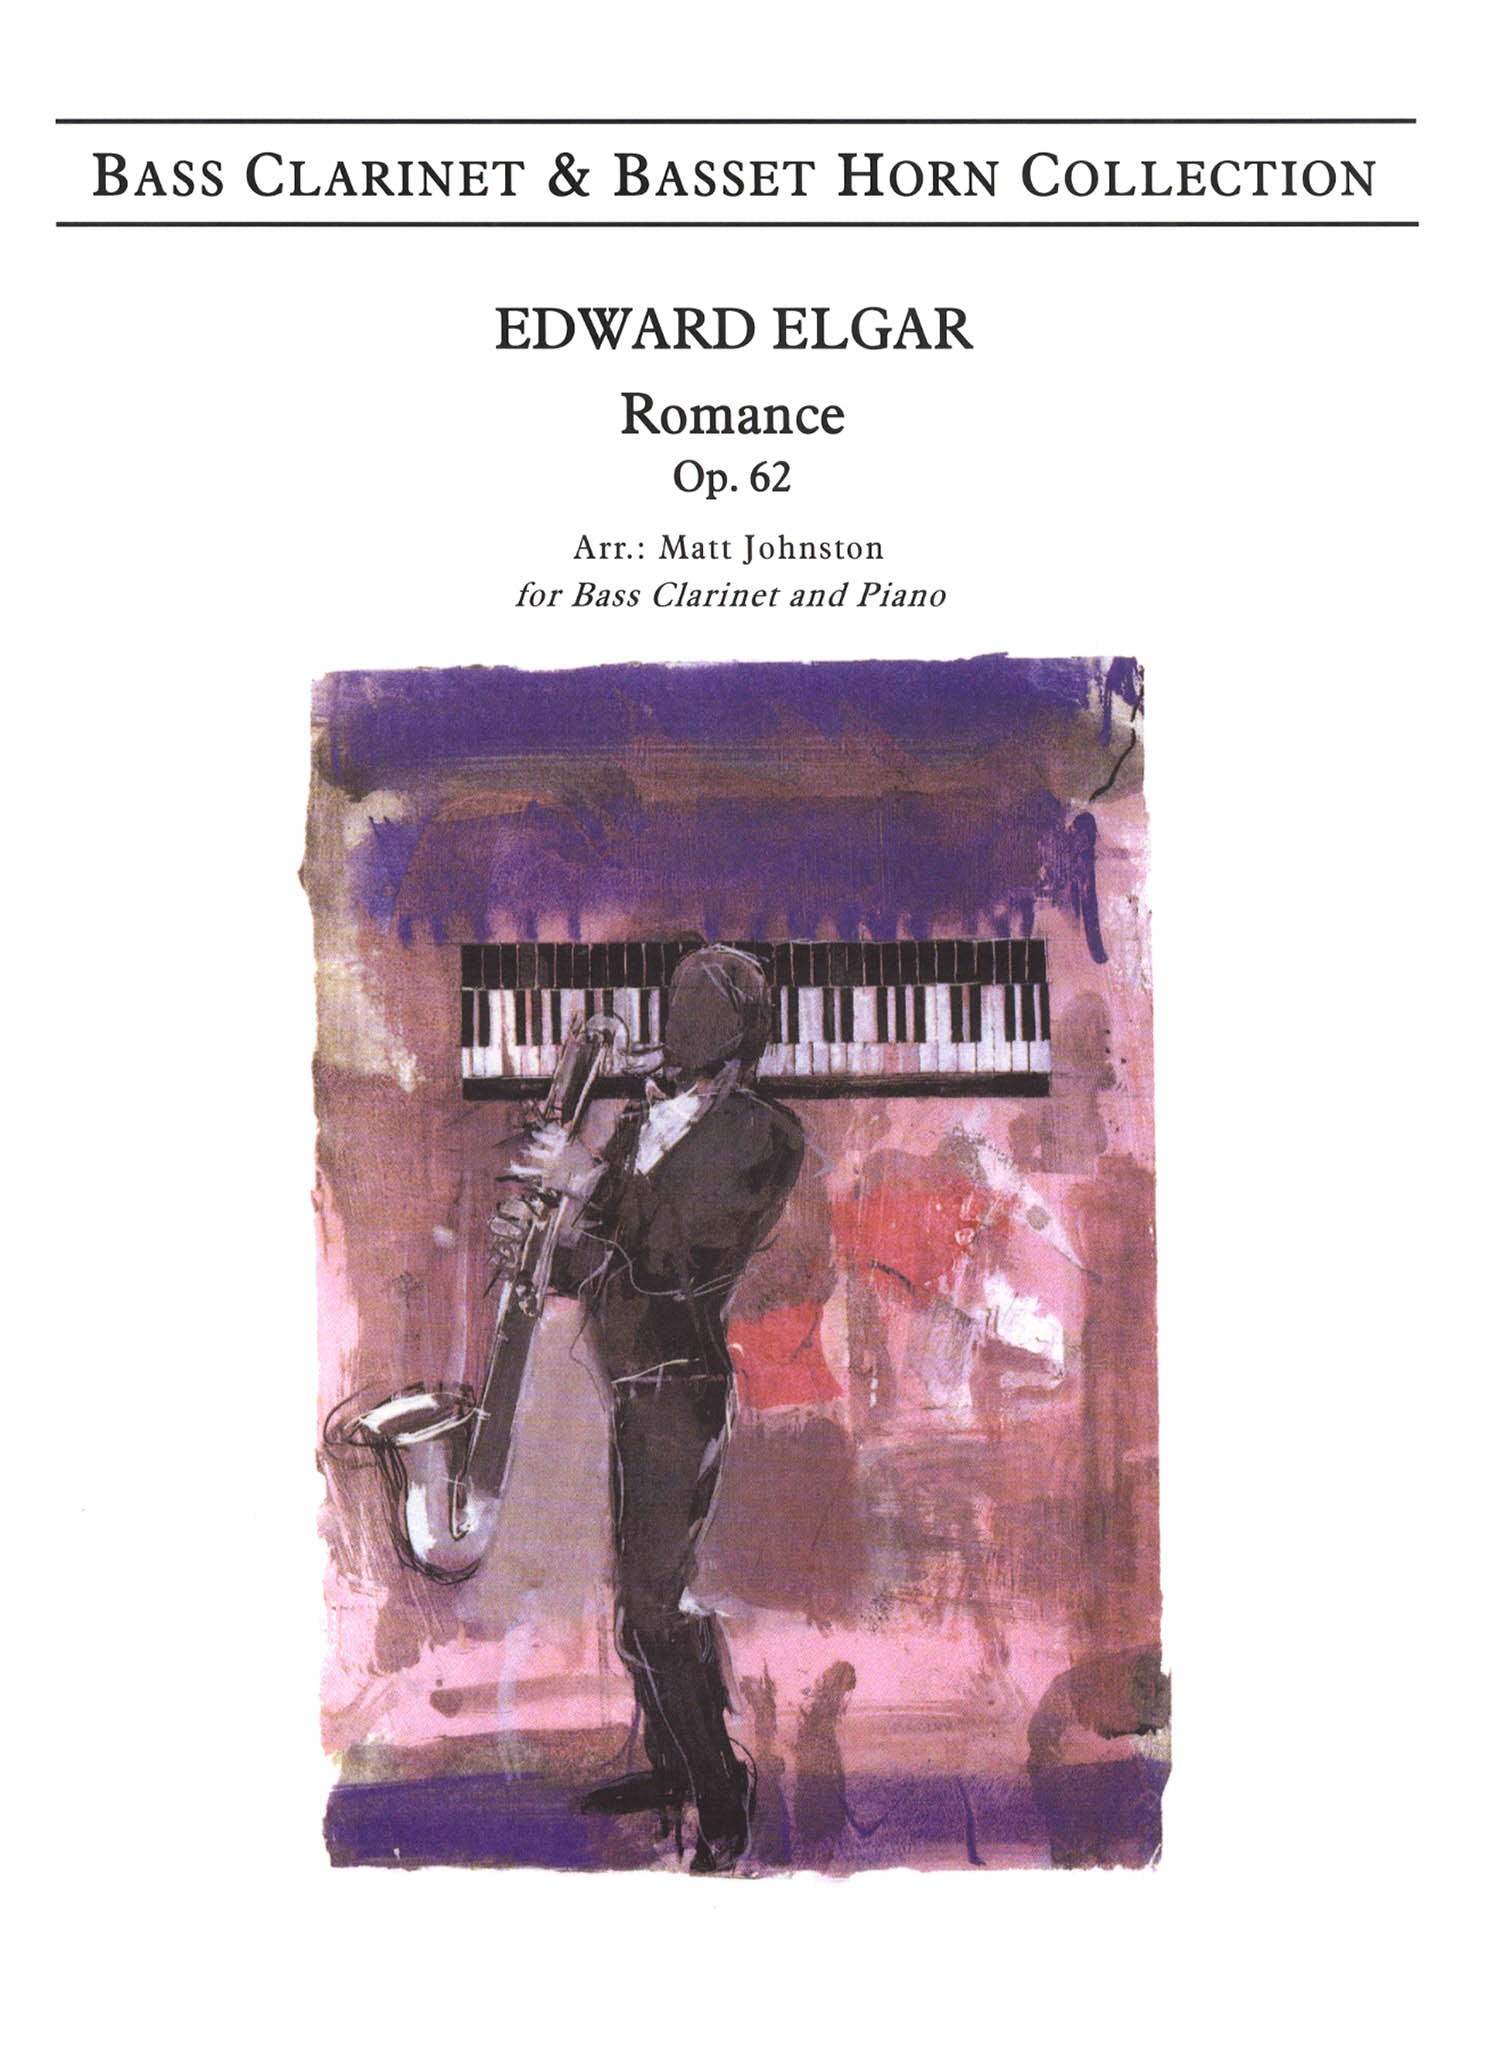 Elgar, Edward Romance, Op. 62 bass clarinet arrangement cover